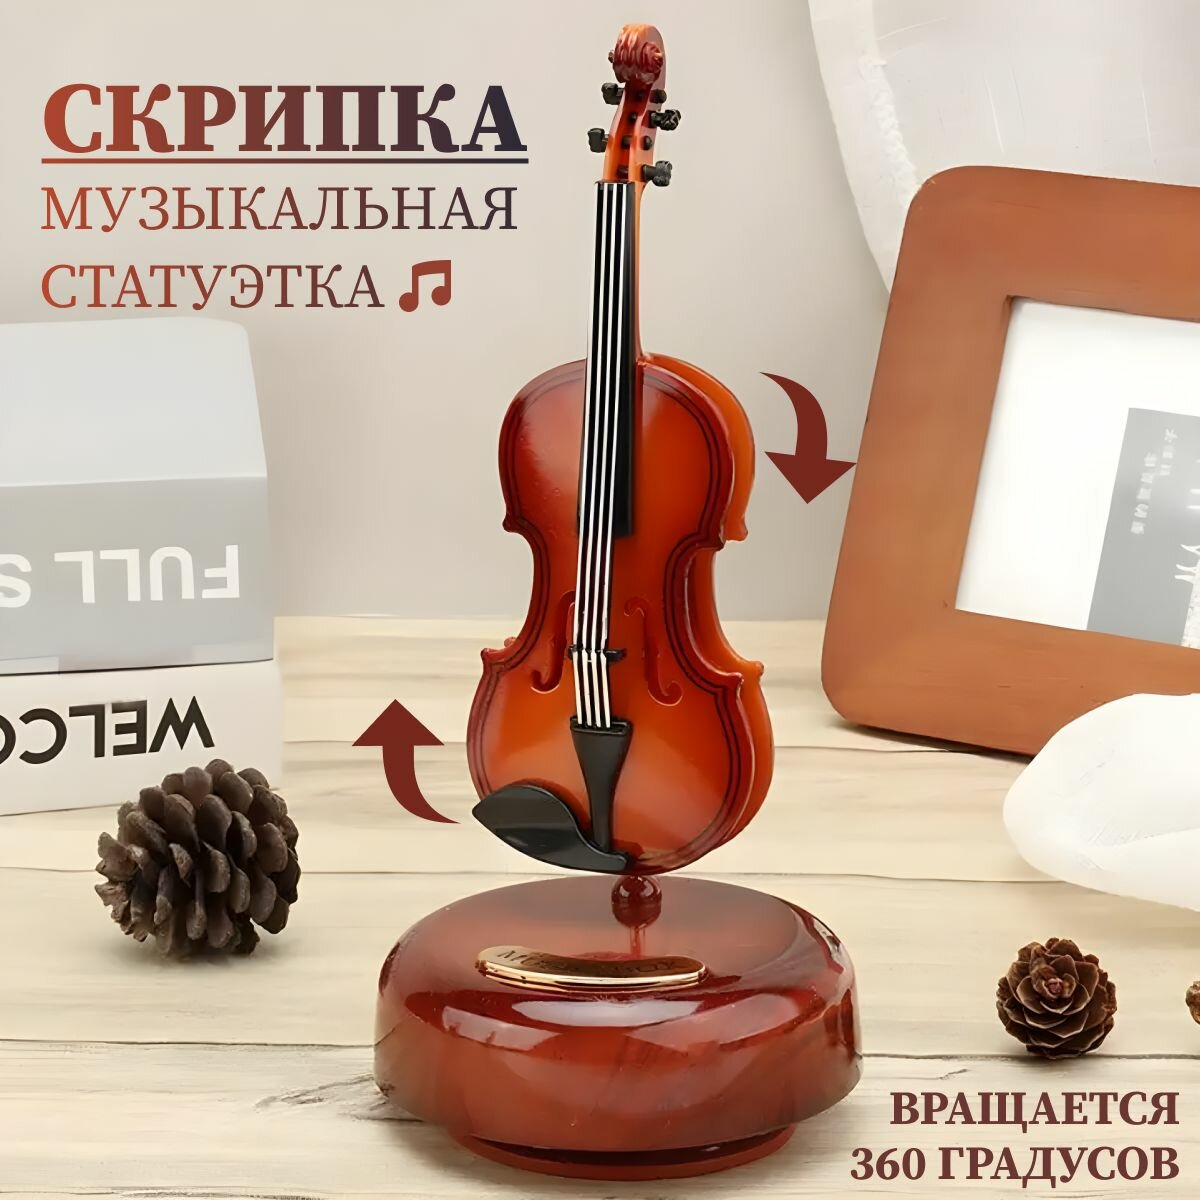 Музыкальная фигурка в форме скрипки. Интерьерная статуэтка. Подарок музыканту или Сувенир